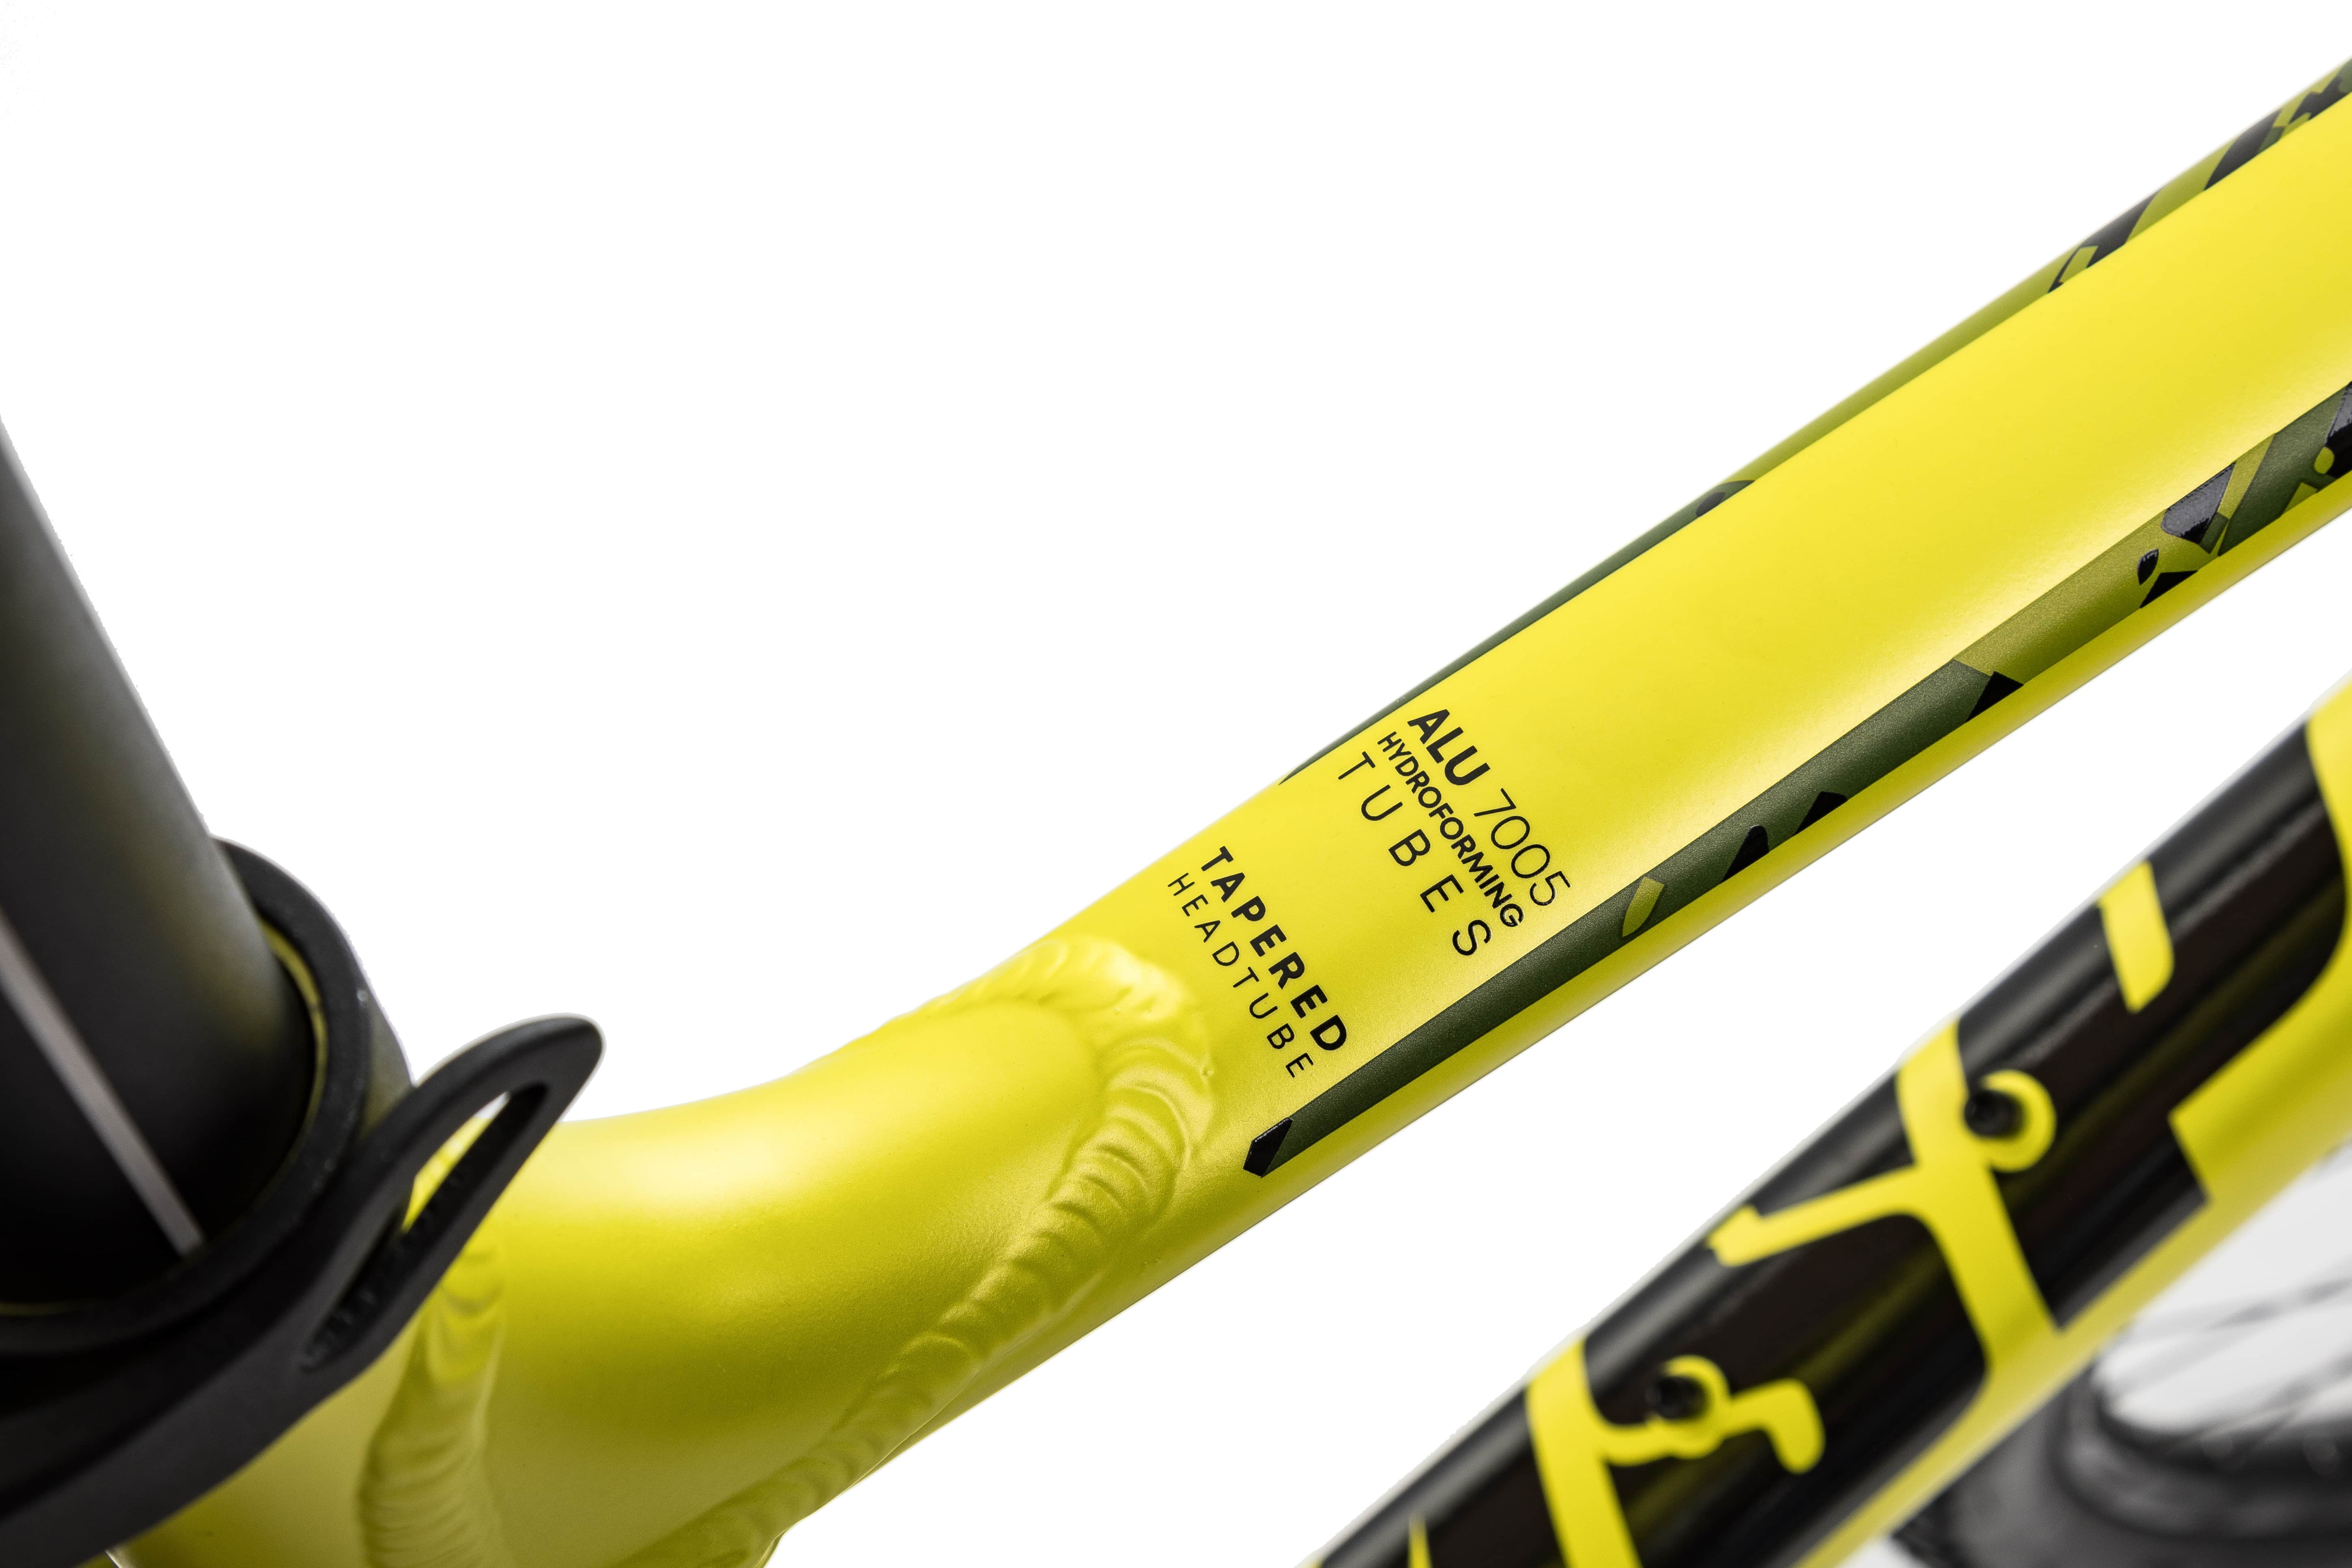 Велосипед Aspect RONIN 29 19" Желтый (2022)